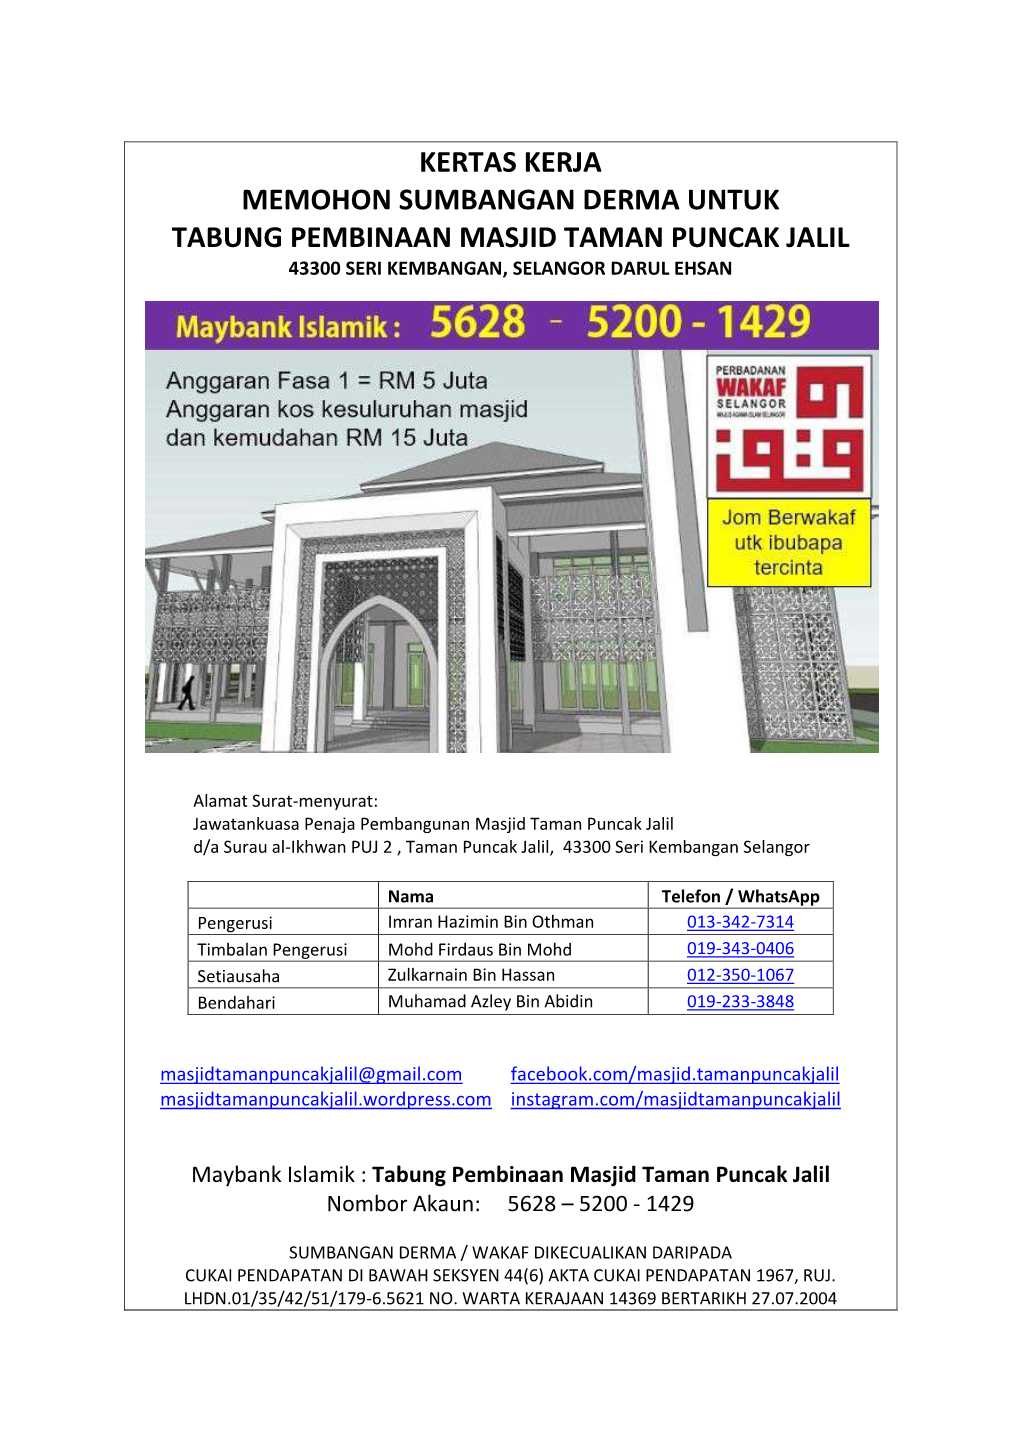 Kertas Kerja Memohon Sumbangan Derma Untuk Tabung Pembinaan Masjid Taman Puncak Jalil 43300 Seri Kembangan, Selangor Darul Ehsan